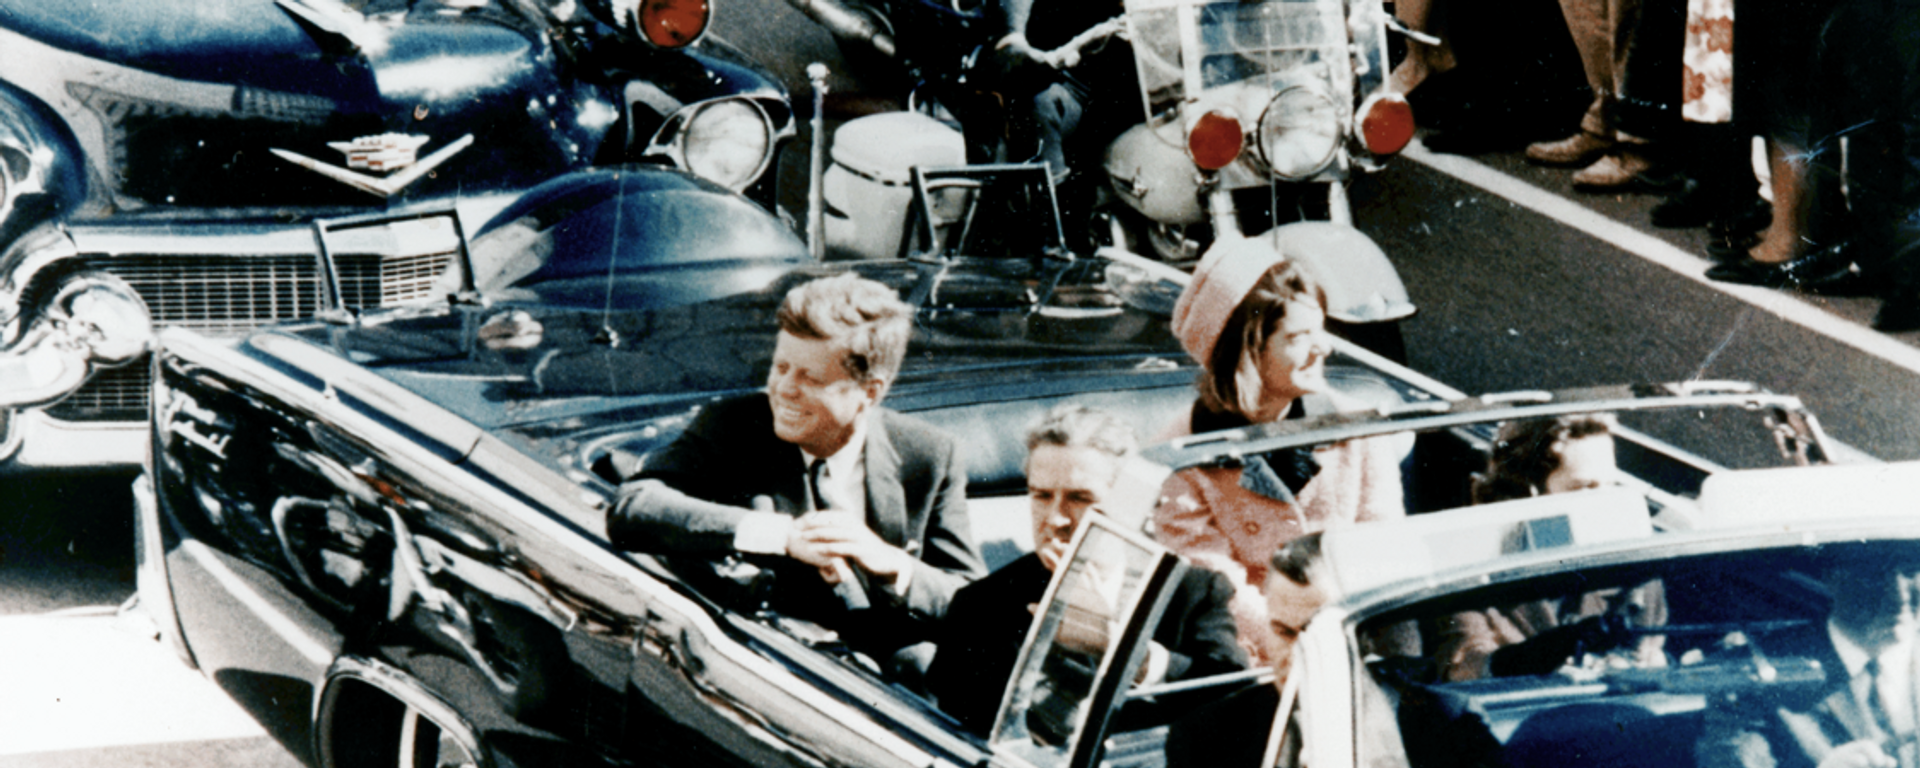 Predsednik SAD Džon F. Kenedi u predsedničkoj limuzini u Dalasu 1963. nekoliko minuta pre atentata. U vozilu su i prva dama Džeki Kenedi, governer Teksasa Džon Konali i njegova žena Neli. - Sputnik Srbija, 1920, 22.11.2020